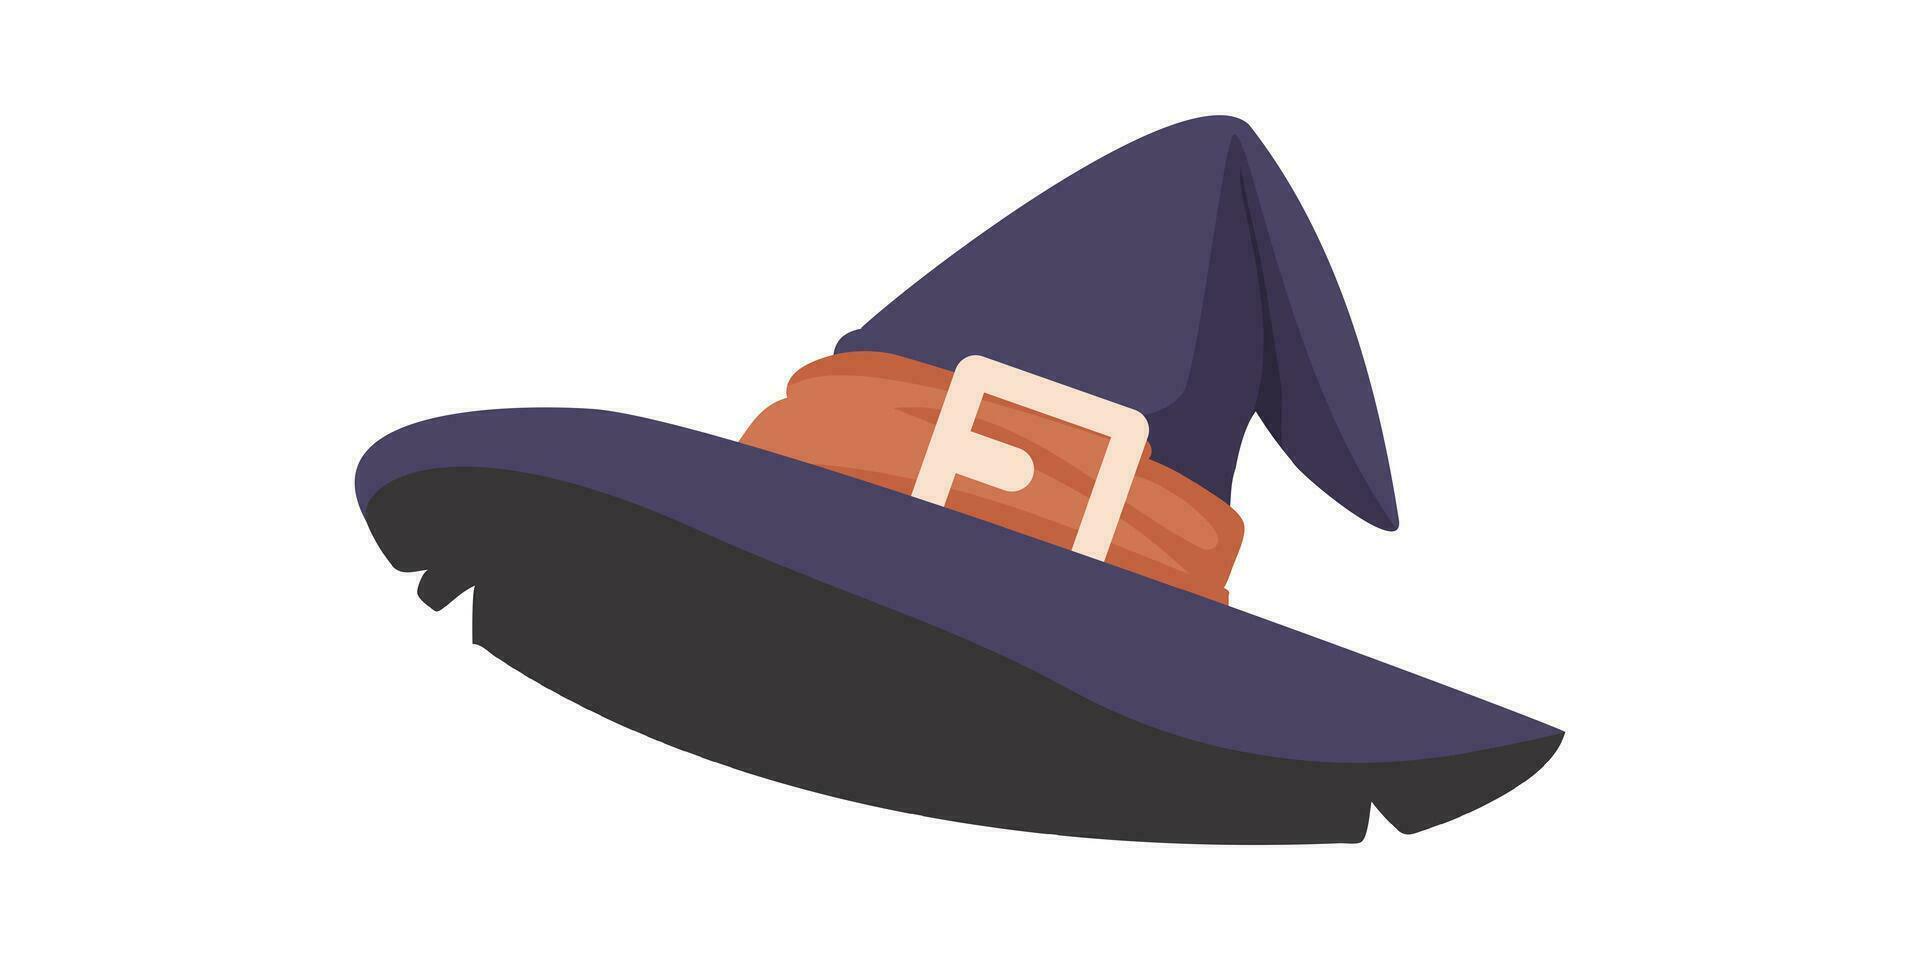 ein Hexe Hut ist ein Ja wirklich hoch Hut Das Hexen tragen auf ihr Köpfe. ein Baseball Hut entworfen zu aussehen mögen ein Halloween Kostüm. Karikatur Stil, Vektor Illustration